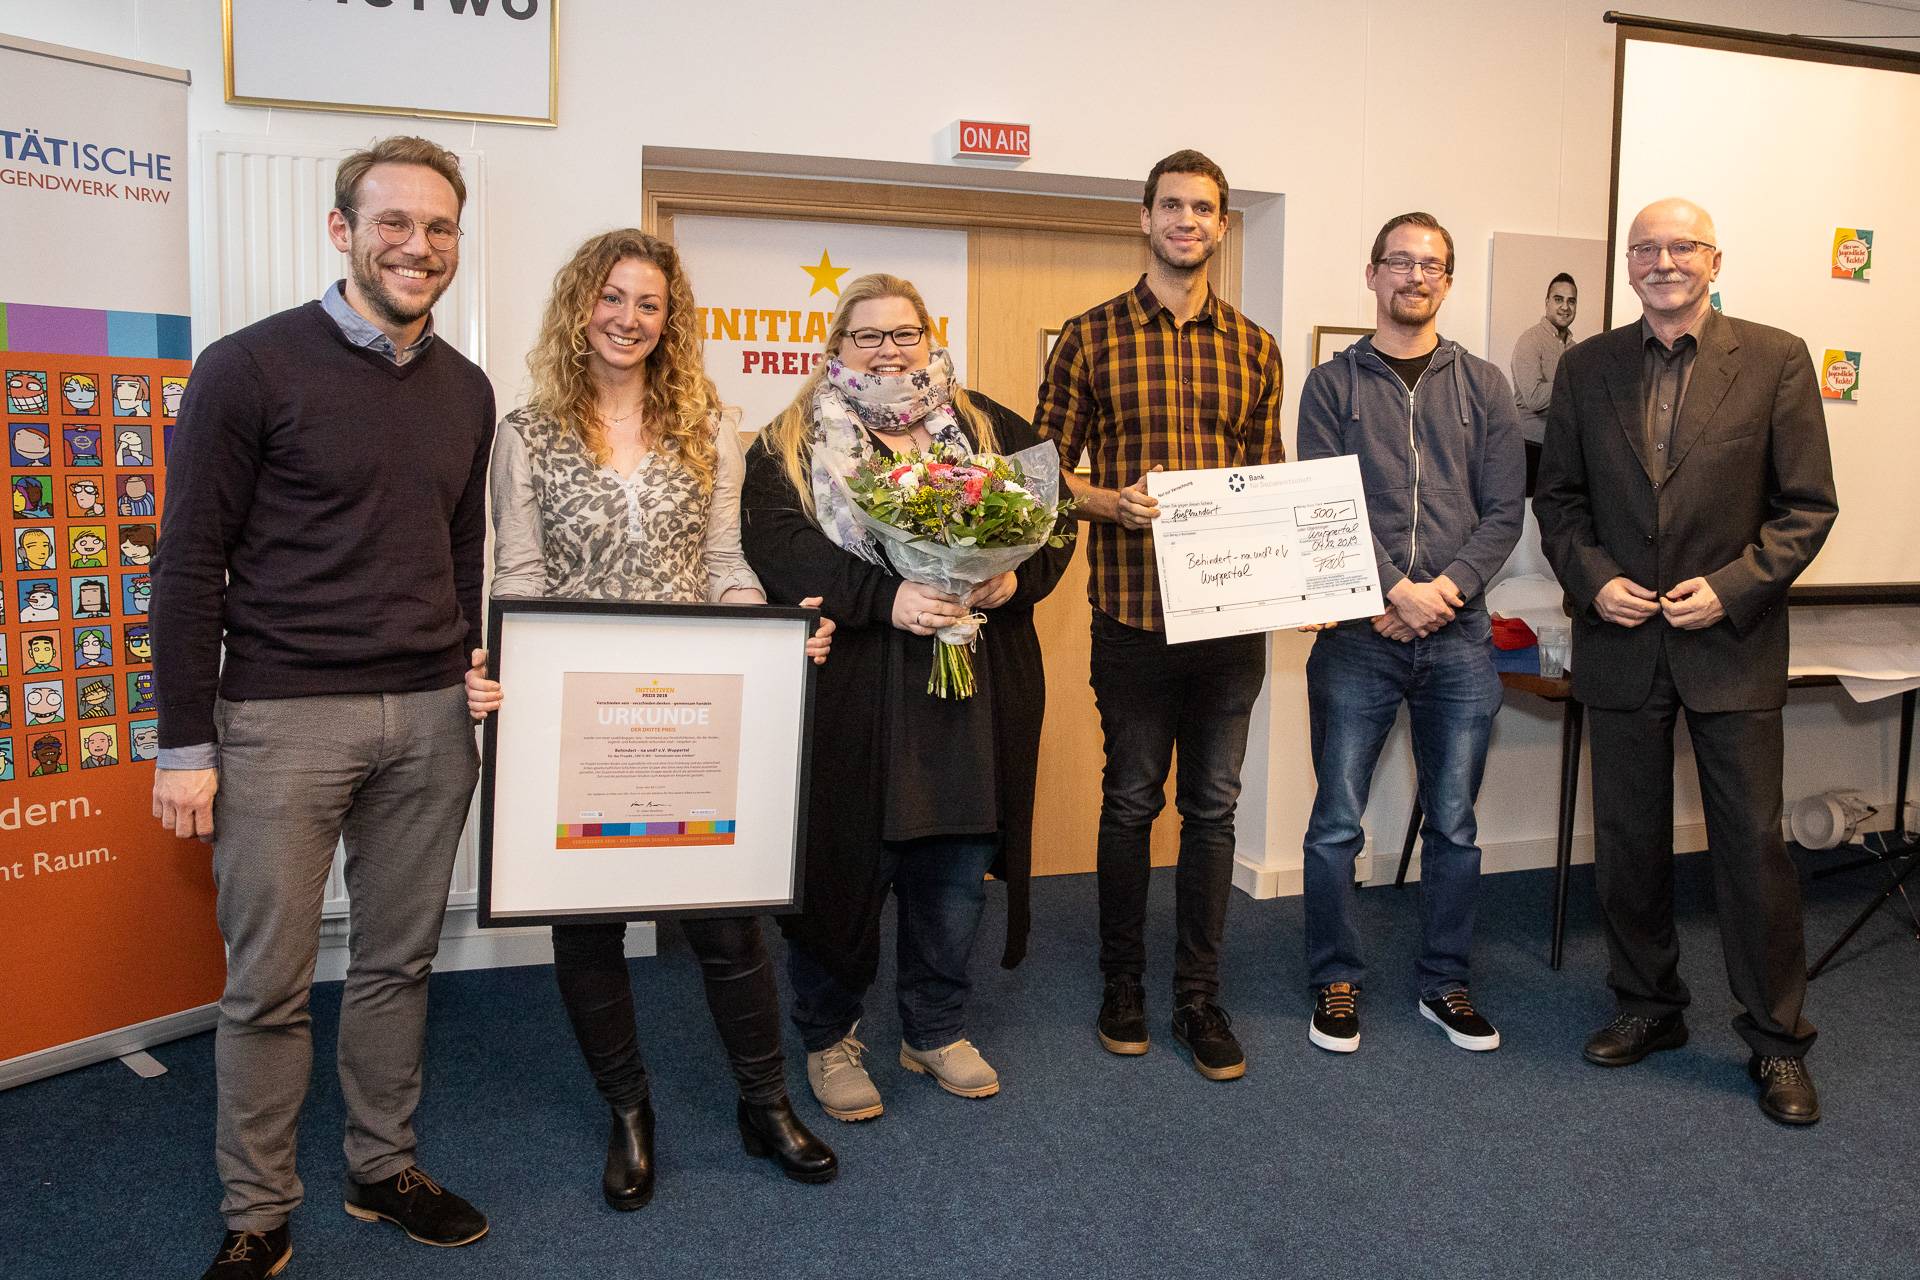  Mitglieder des Wuppertaler Vereins „Behindert - na und?“ bei der Preisverleihung des Initiativenpreises.  